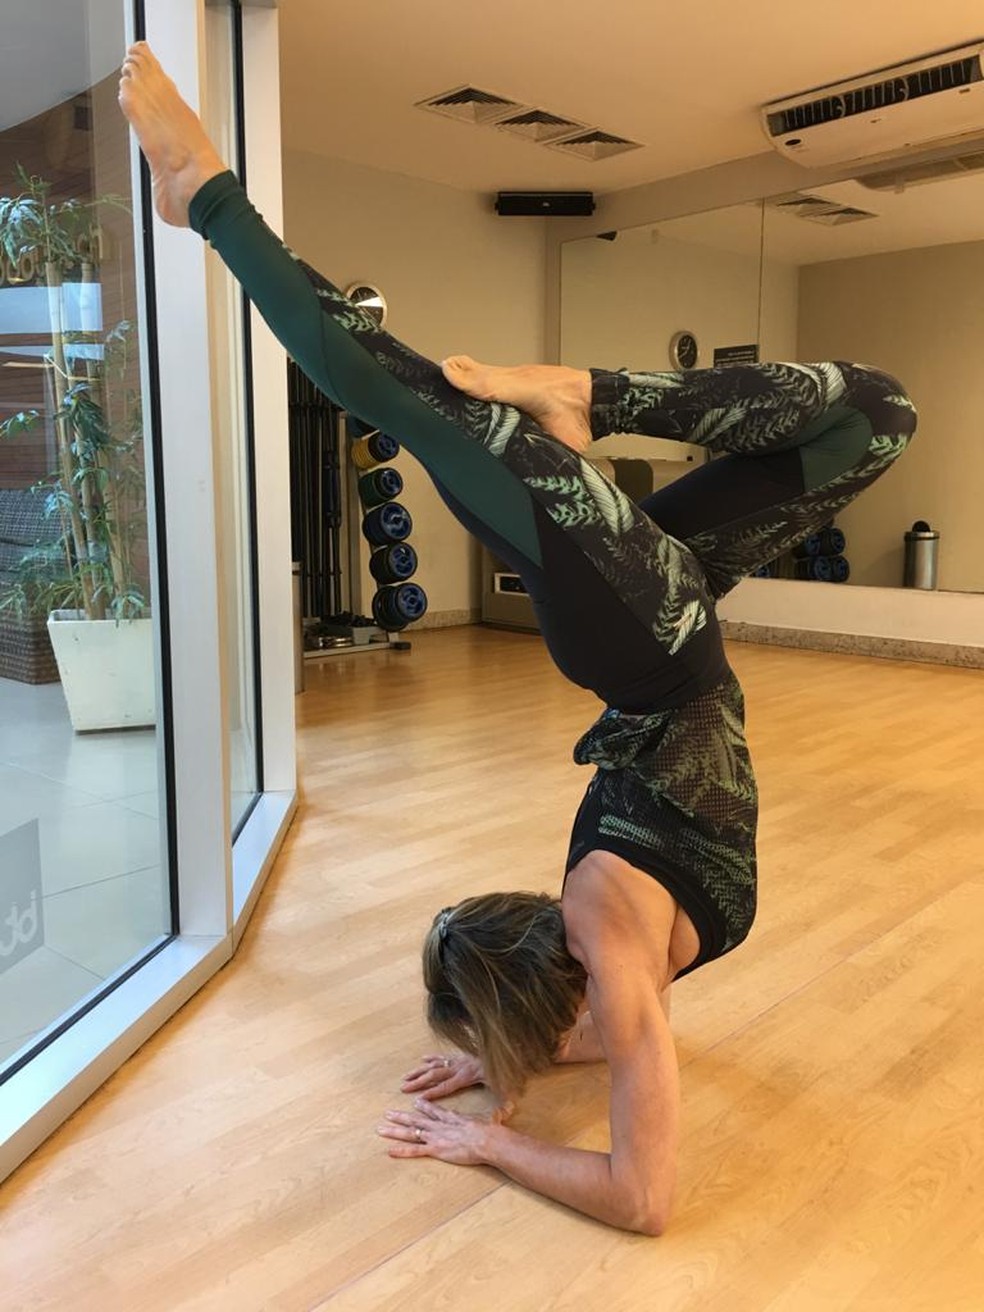 Principais tipos de yoga: conheça as características, treinos